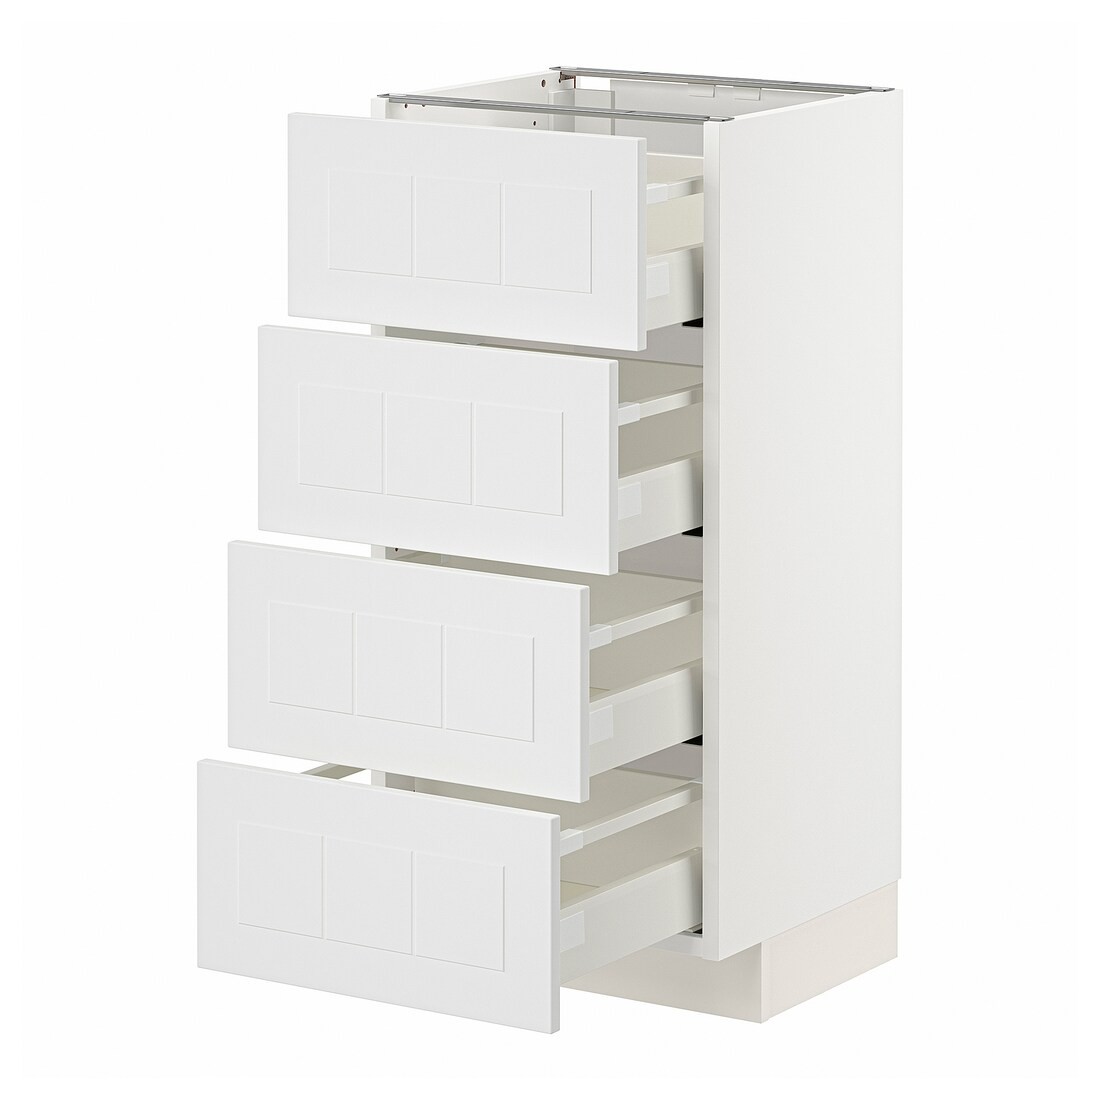 IKEA METOD МЕТОД / MAXIMERA МАКСИМЕРА Напольный шкаф 4 ящика, белый / Stensund белый, 40x37 см 99409486 994.094.86